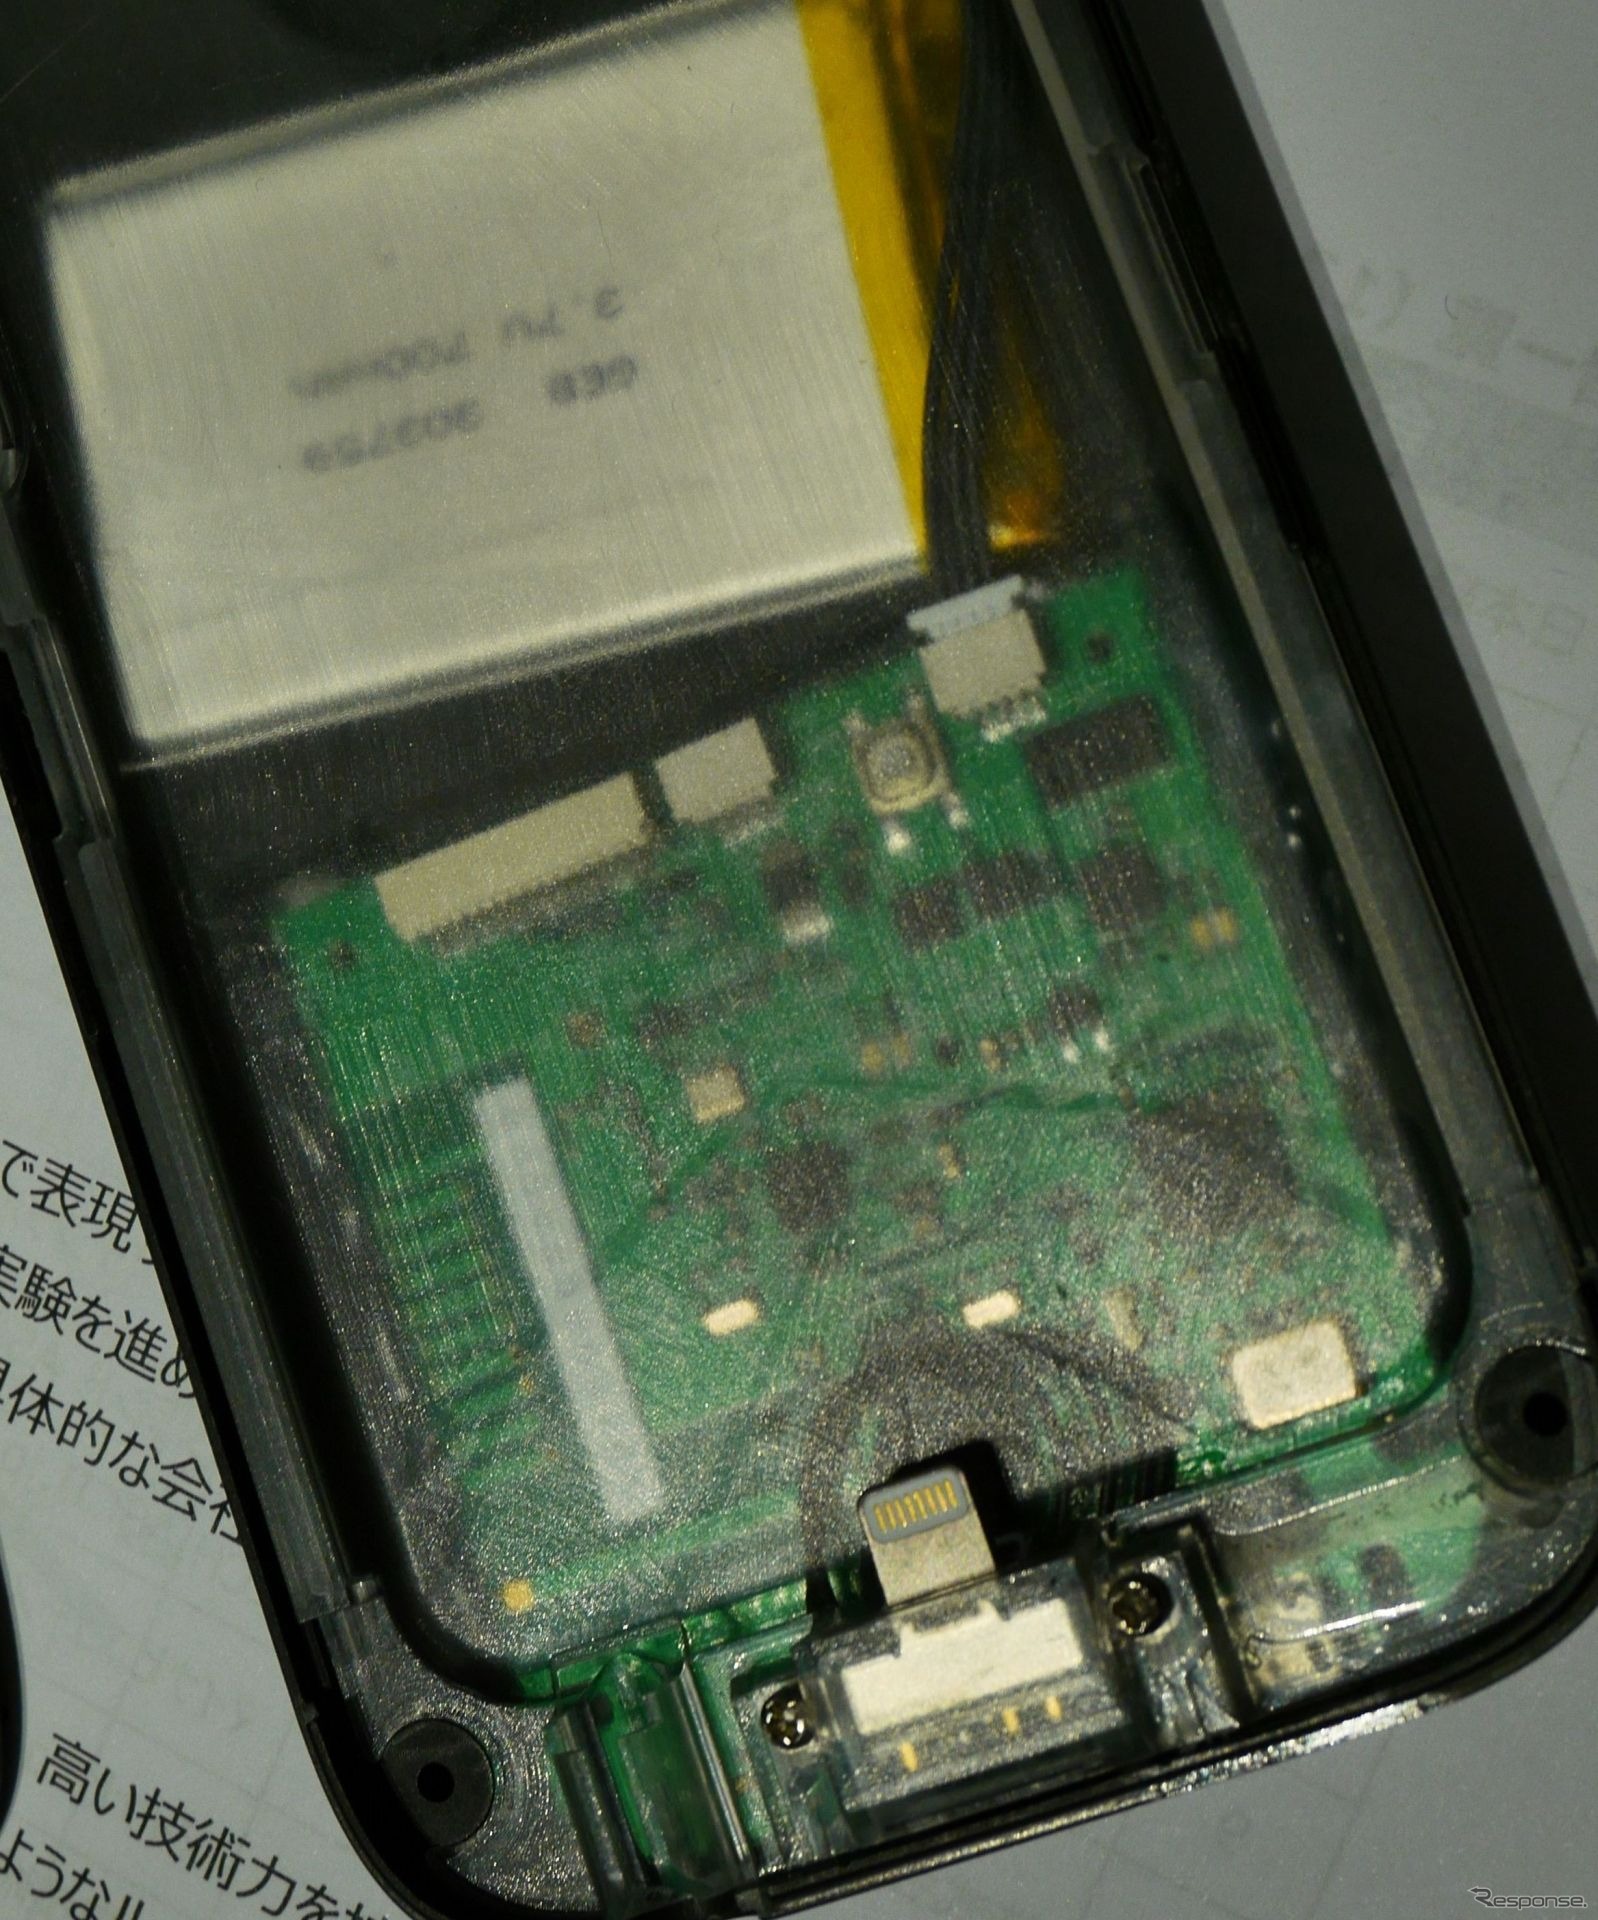 スマートフォンケースの内側に、スマートフォンと接続するプラグが見える。上部に見える白い部品はバッテリー。スマートフォンケース側のUSBから、スマートフォン本体と同時に充電する仕組み。